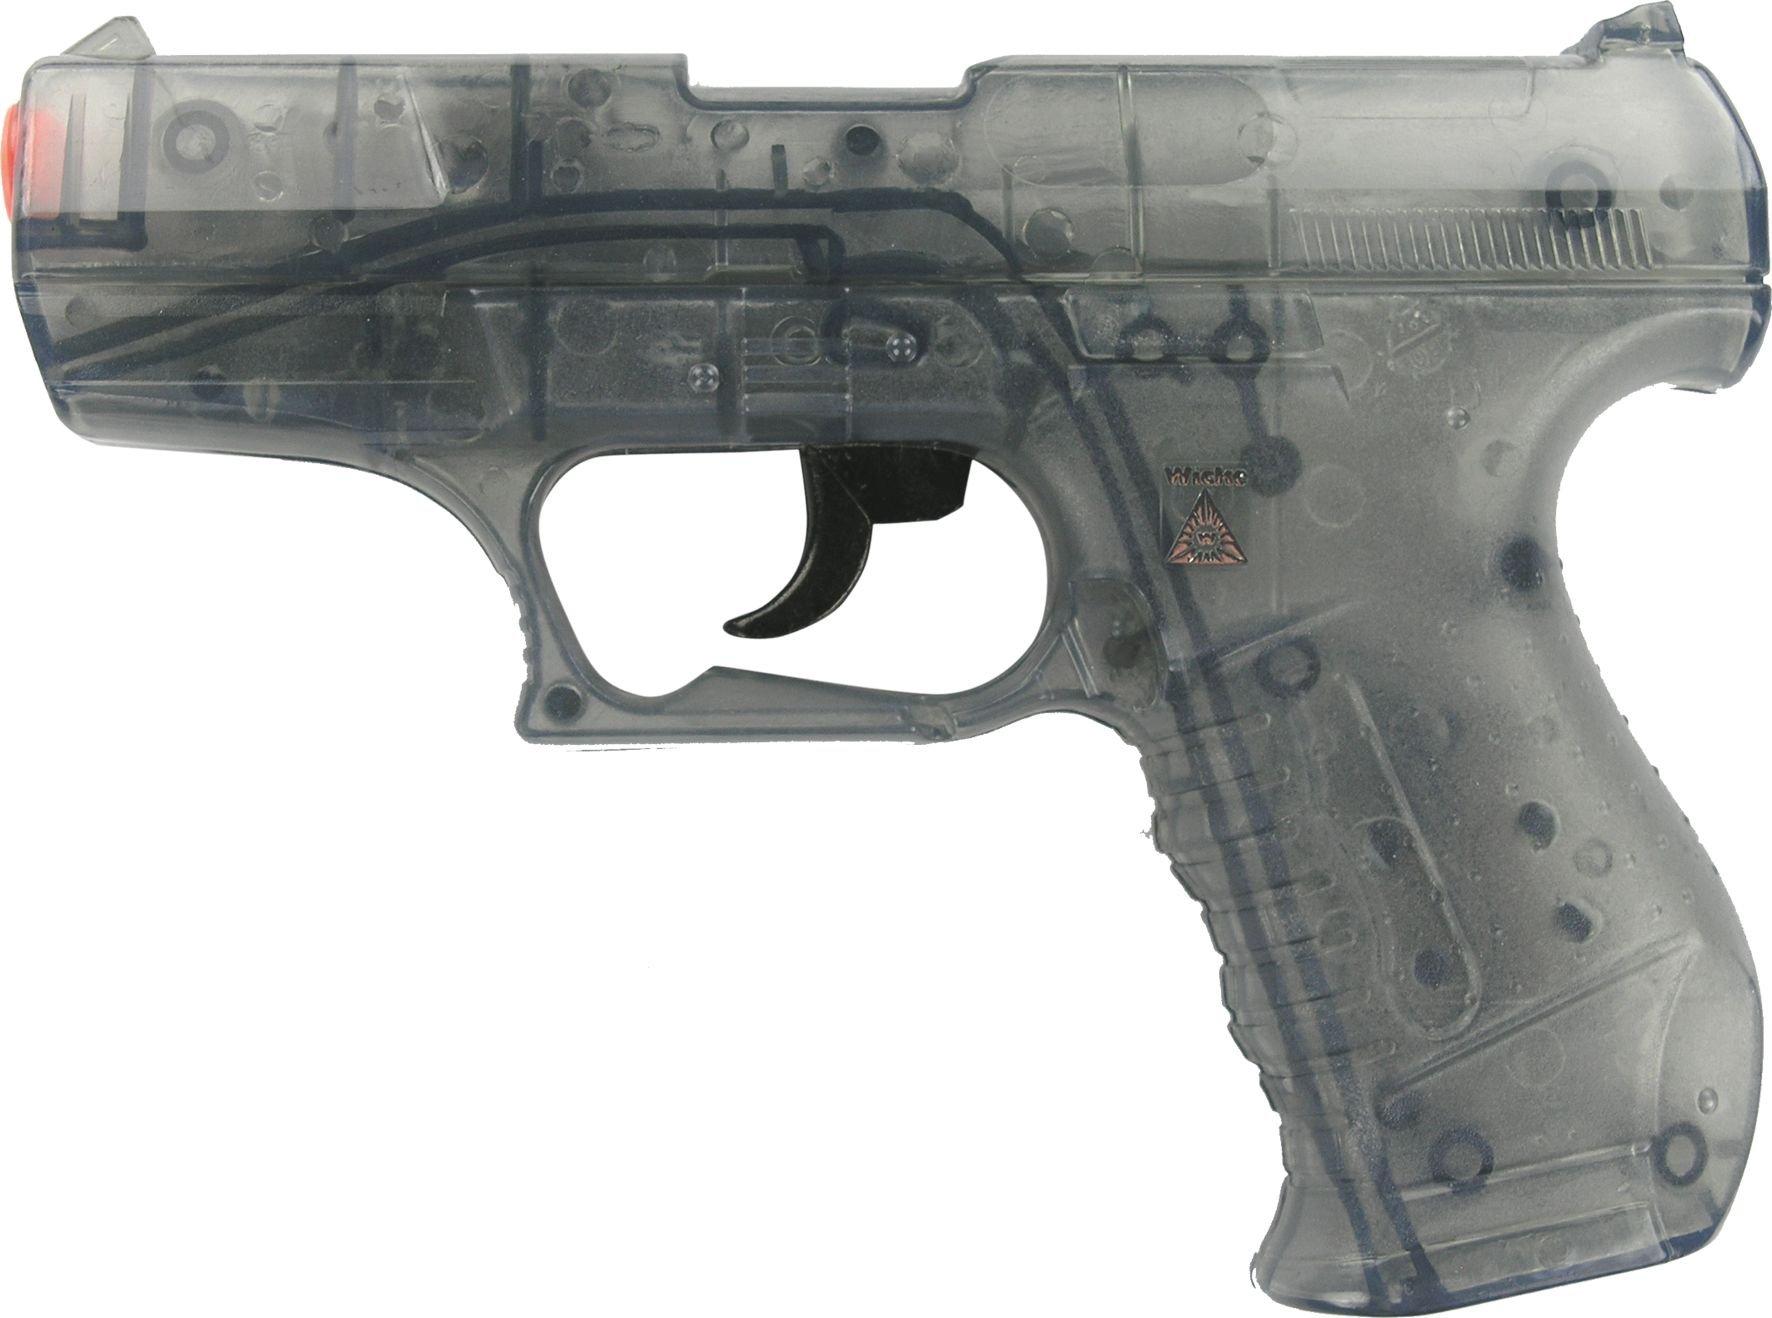 SOHNI-WICKE  Pistola giocattolo P99 